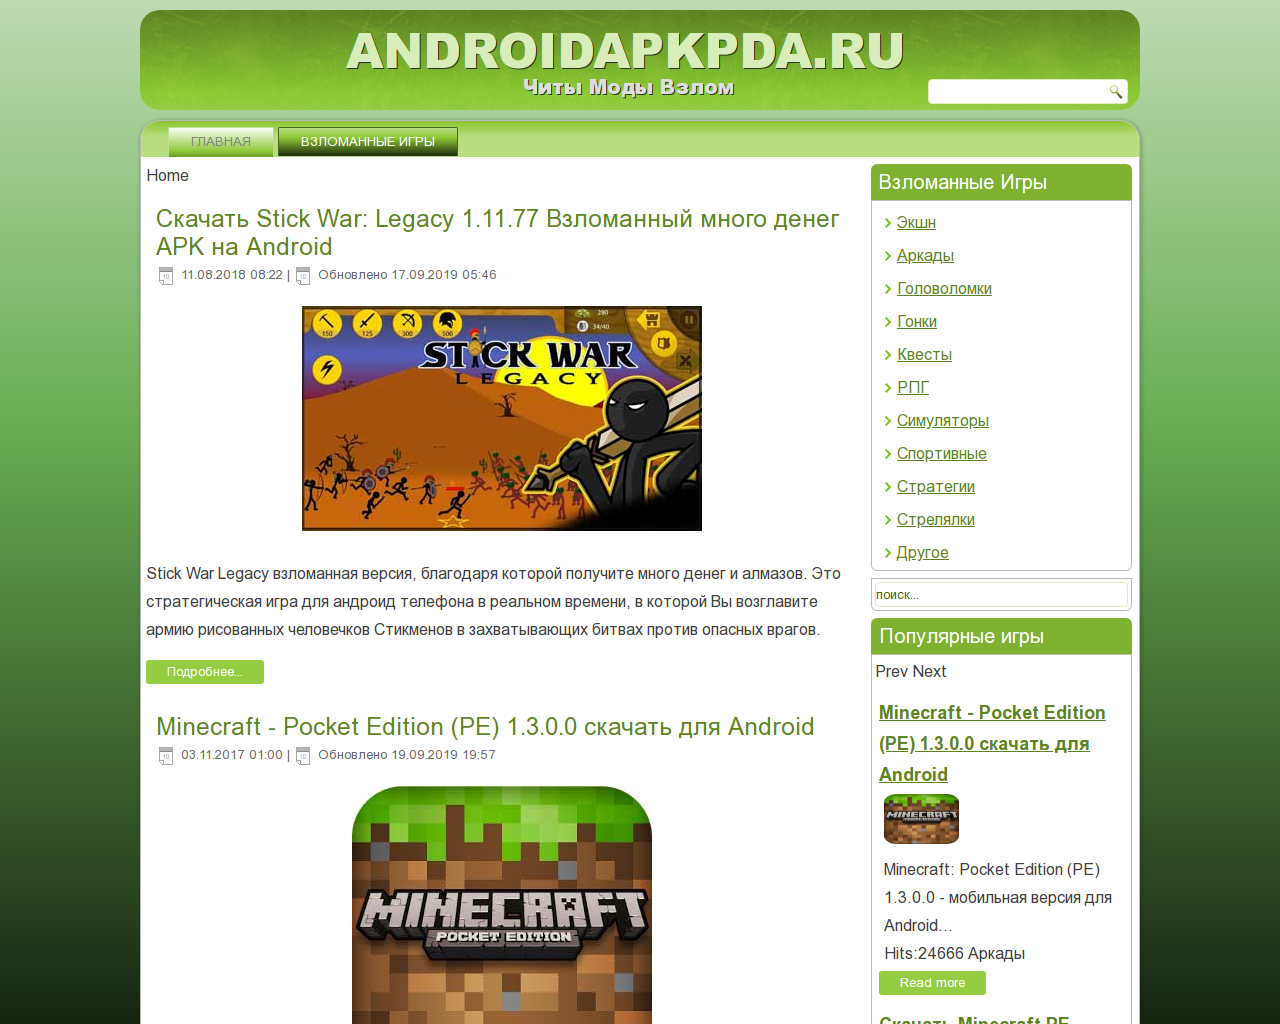 Изображение сайта androidapkpda.ru в разрешении 1280x1024